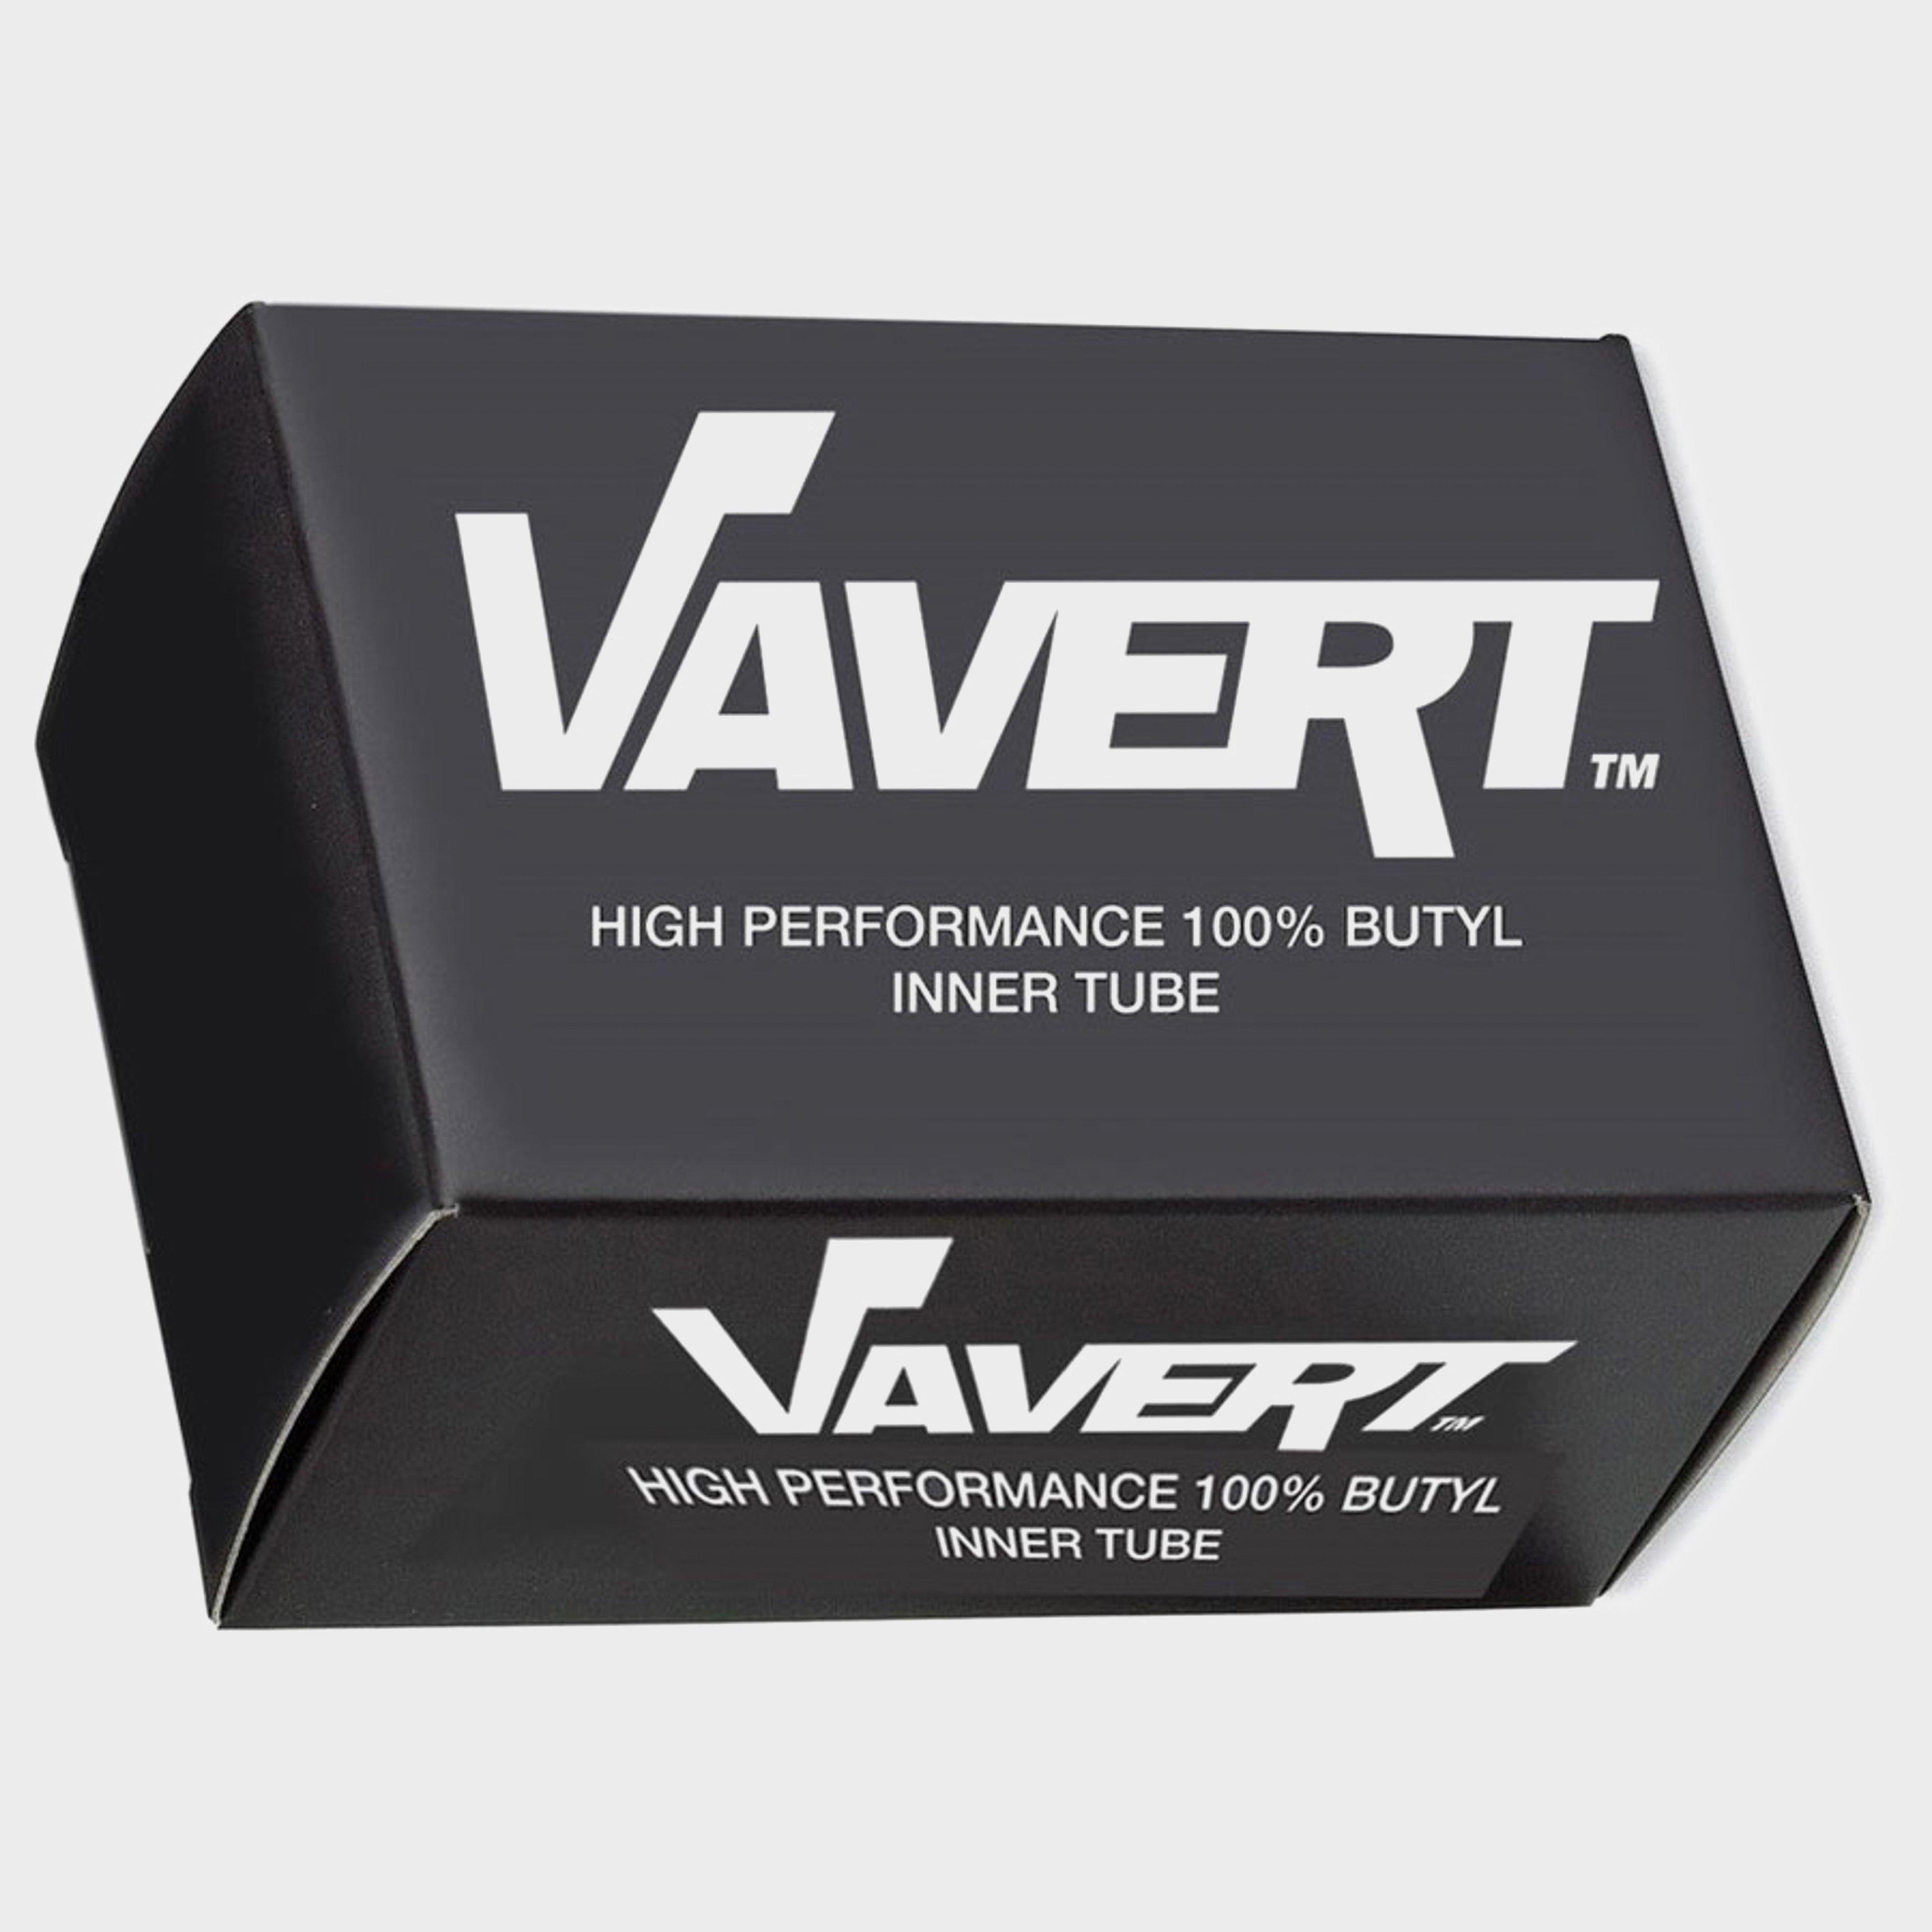 Vavert 700 X 35/45c Presta (40mm) Innertube - Black/40m  Black/40m